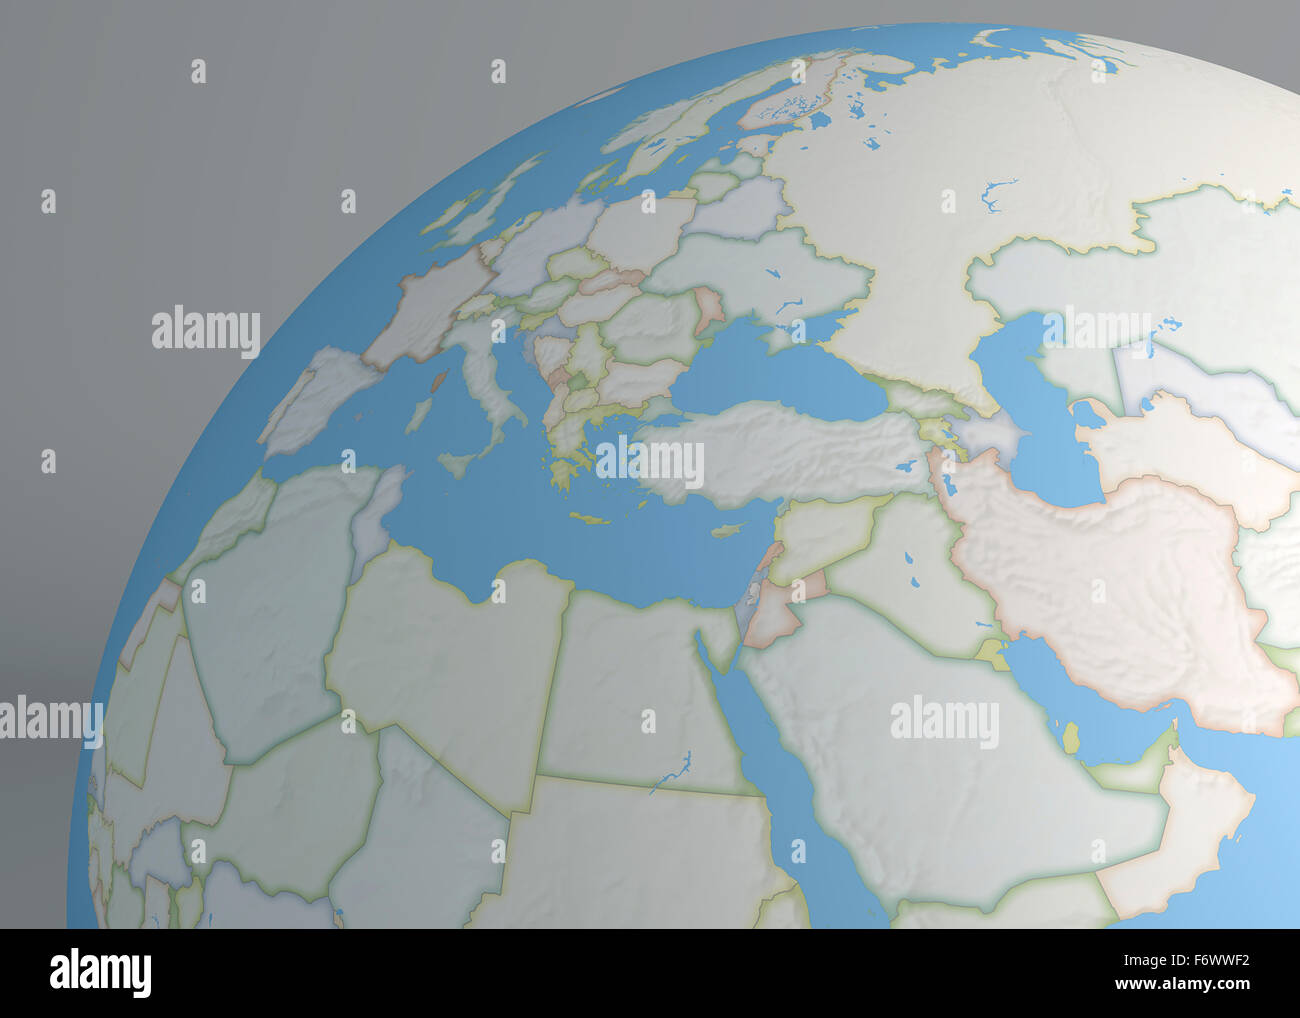 Weltkarte des Nahen Osten, Europa und Nordafrika Stockfoto